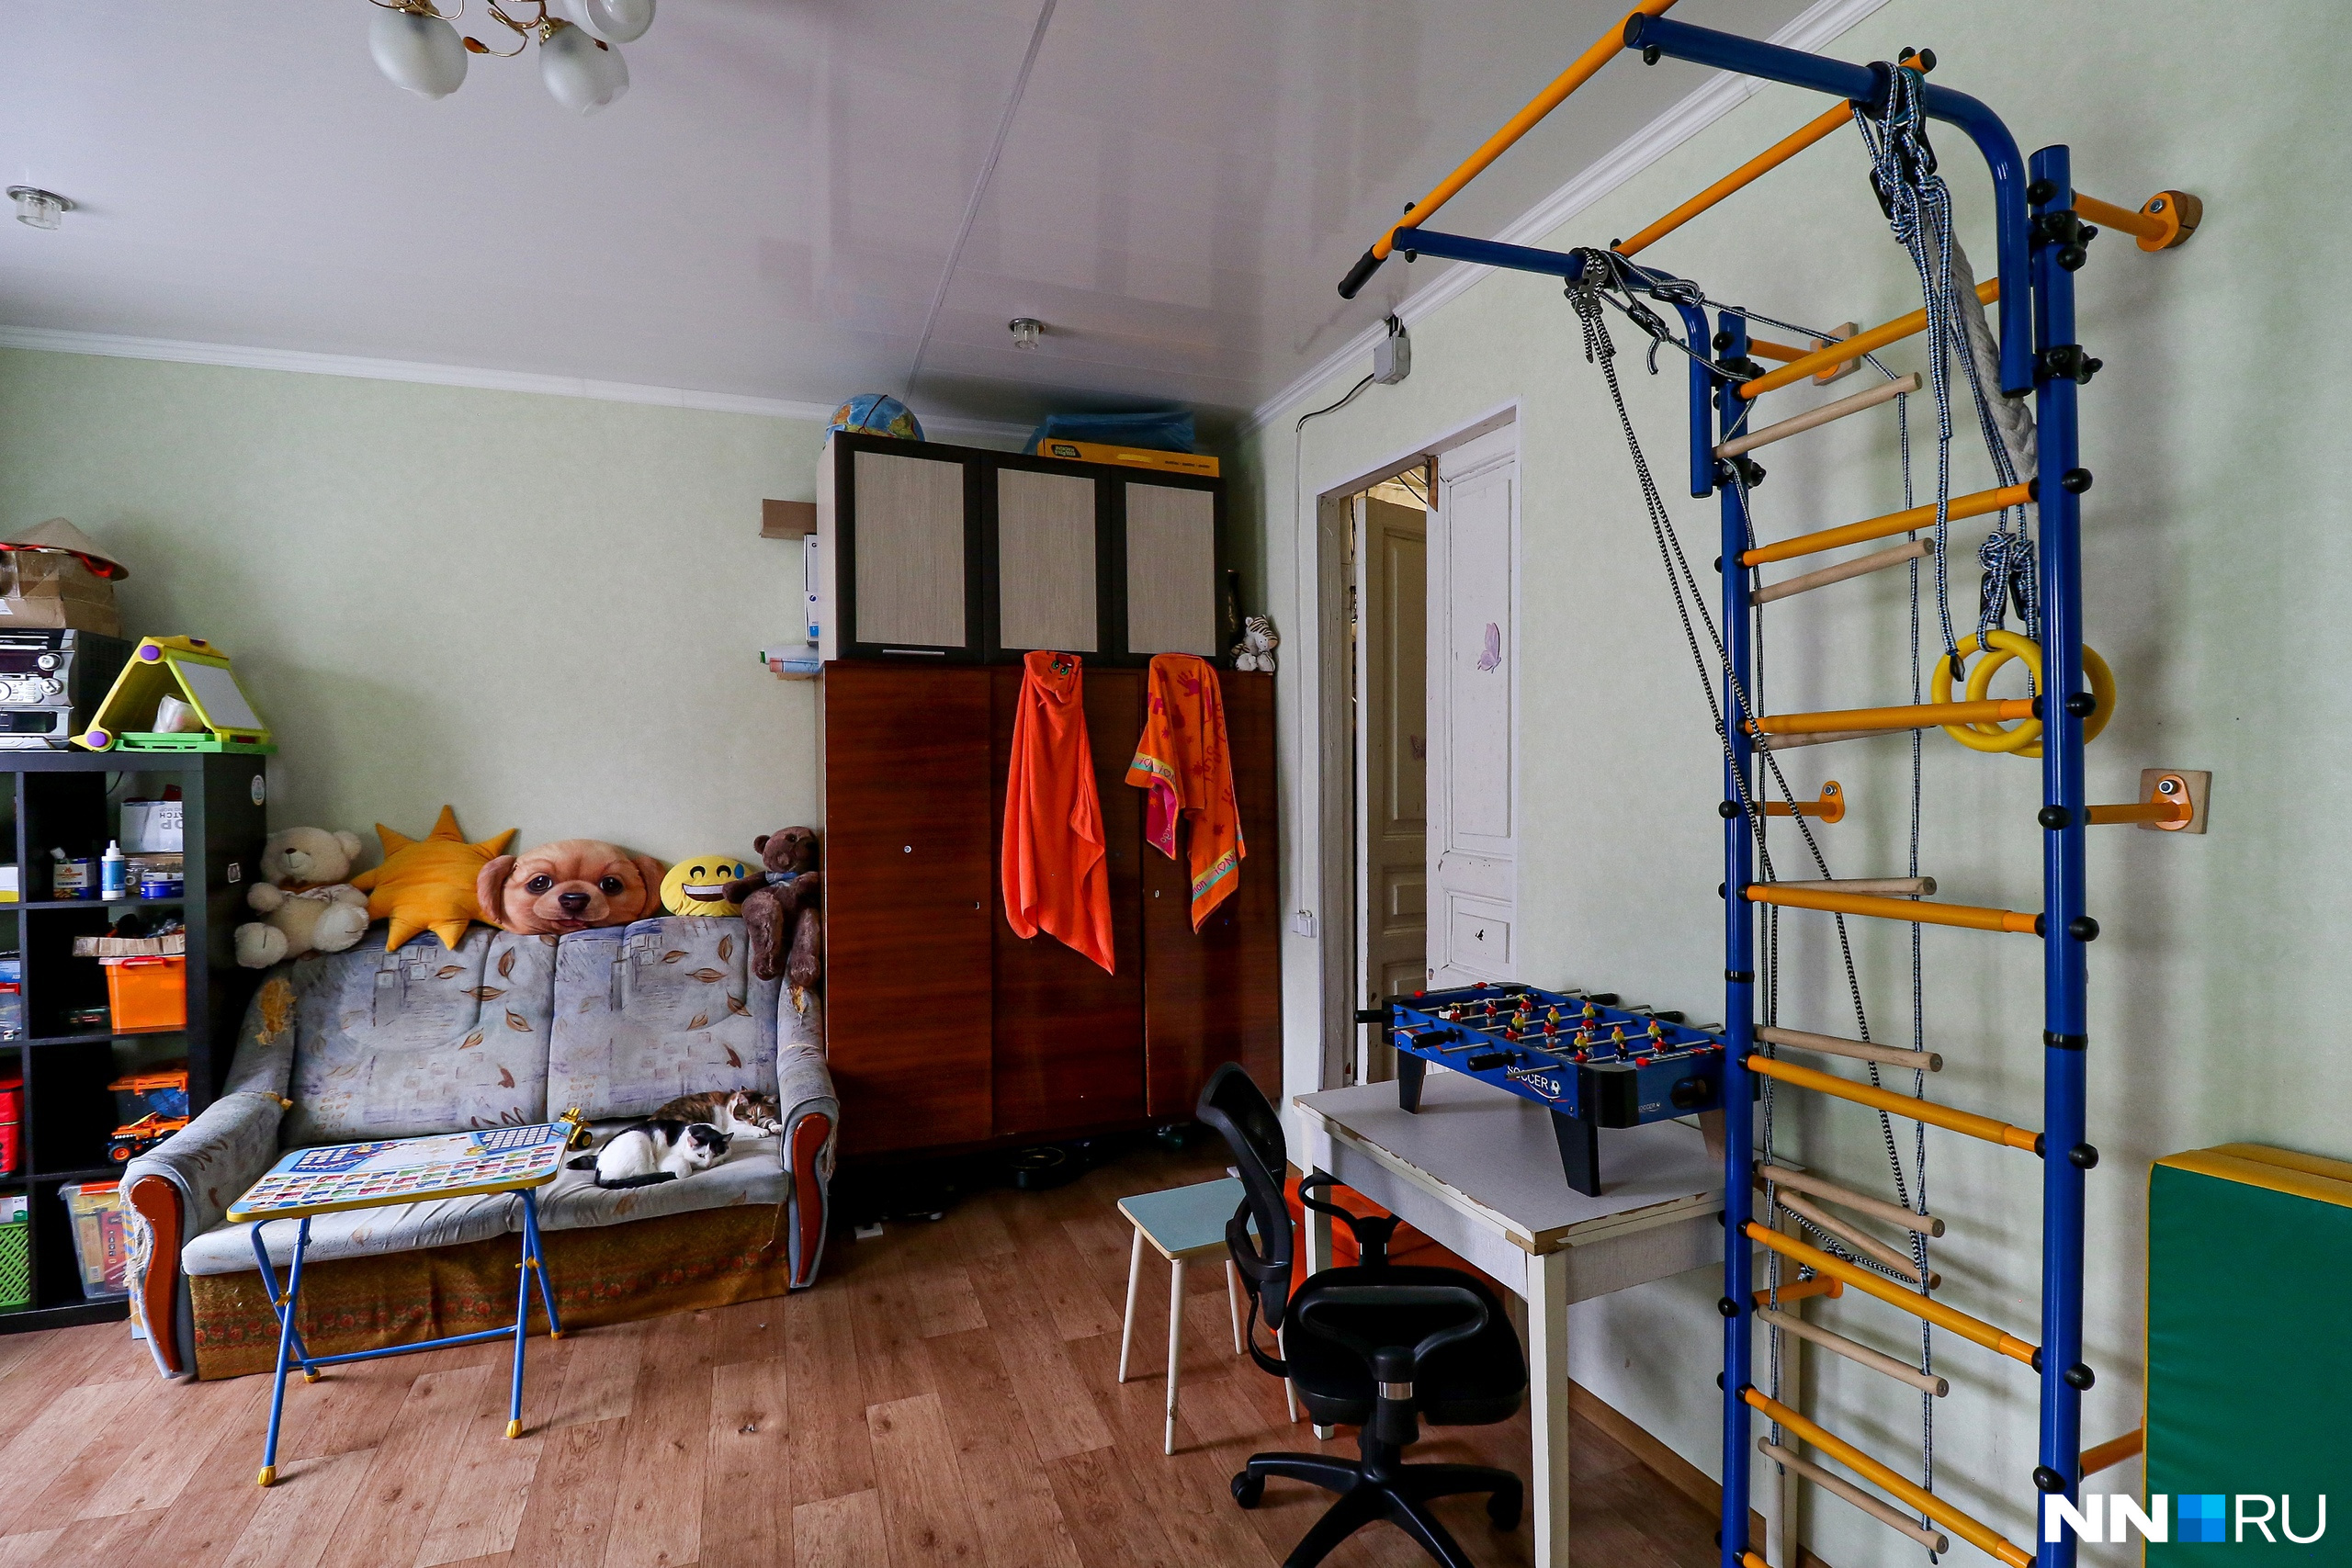 Внутри дома Седова — обычная квартира с современным ремонтом